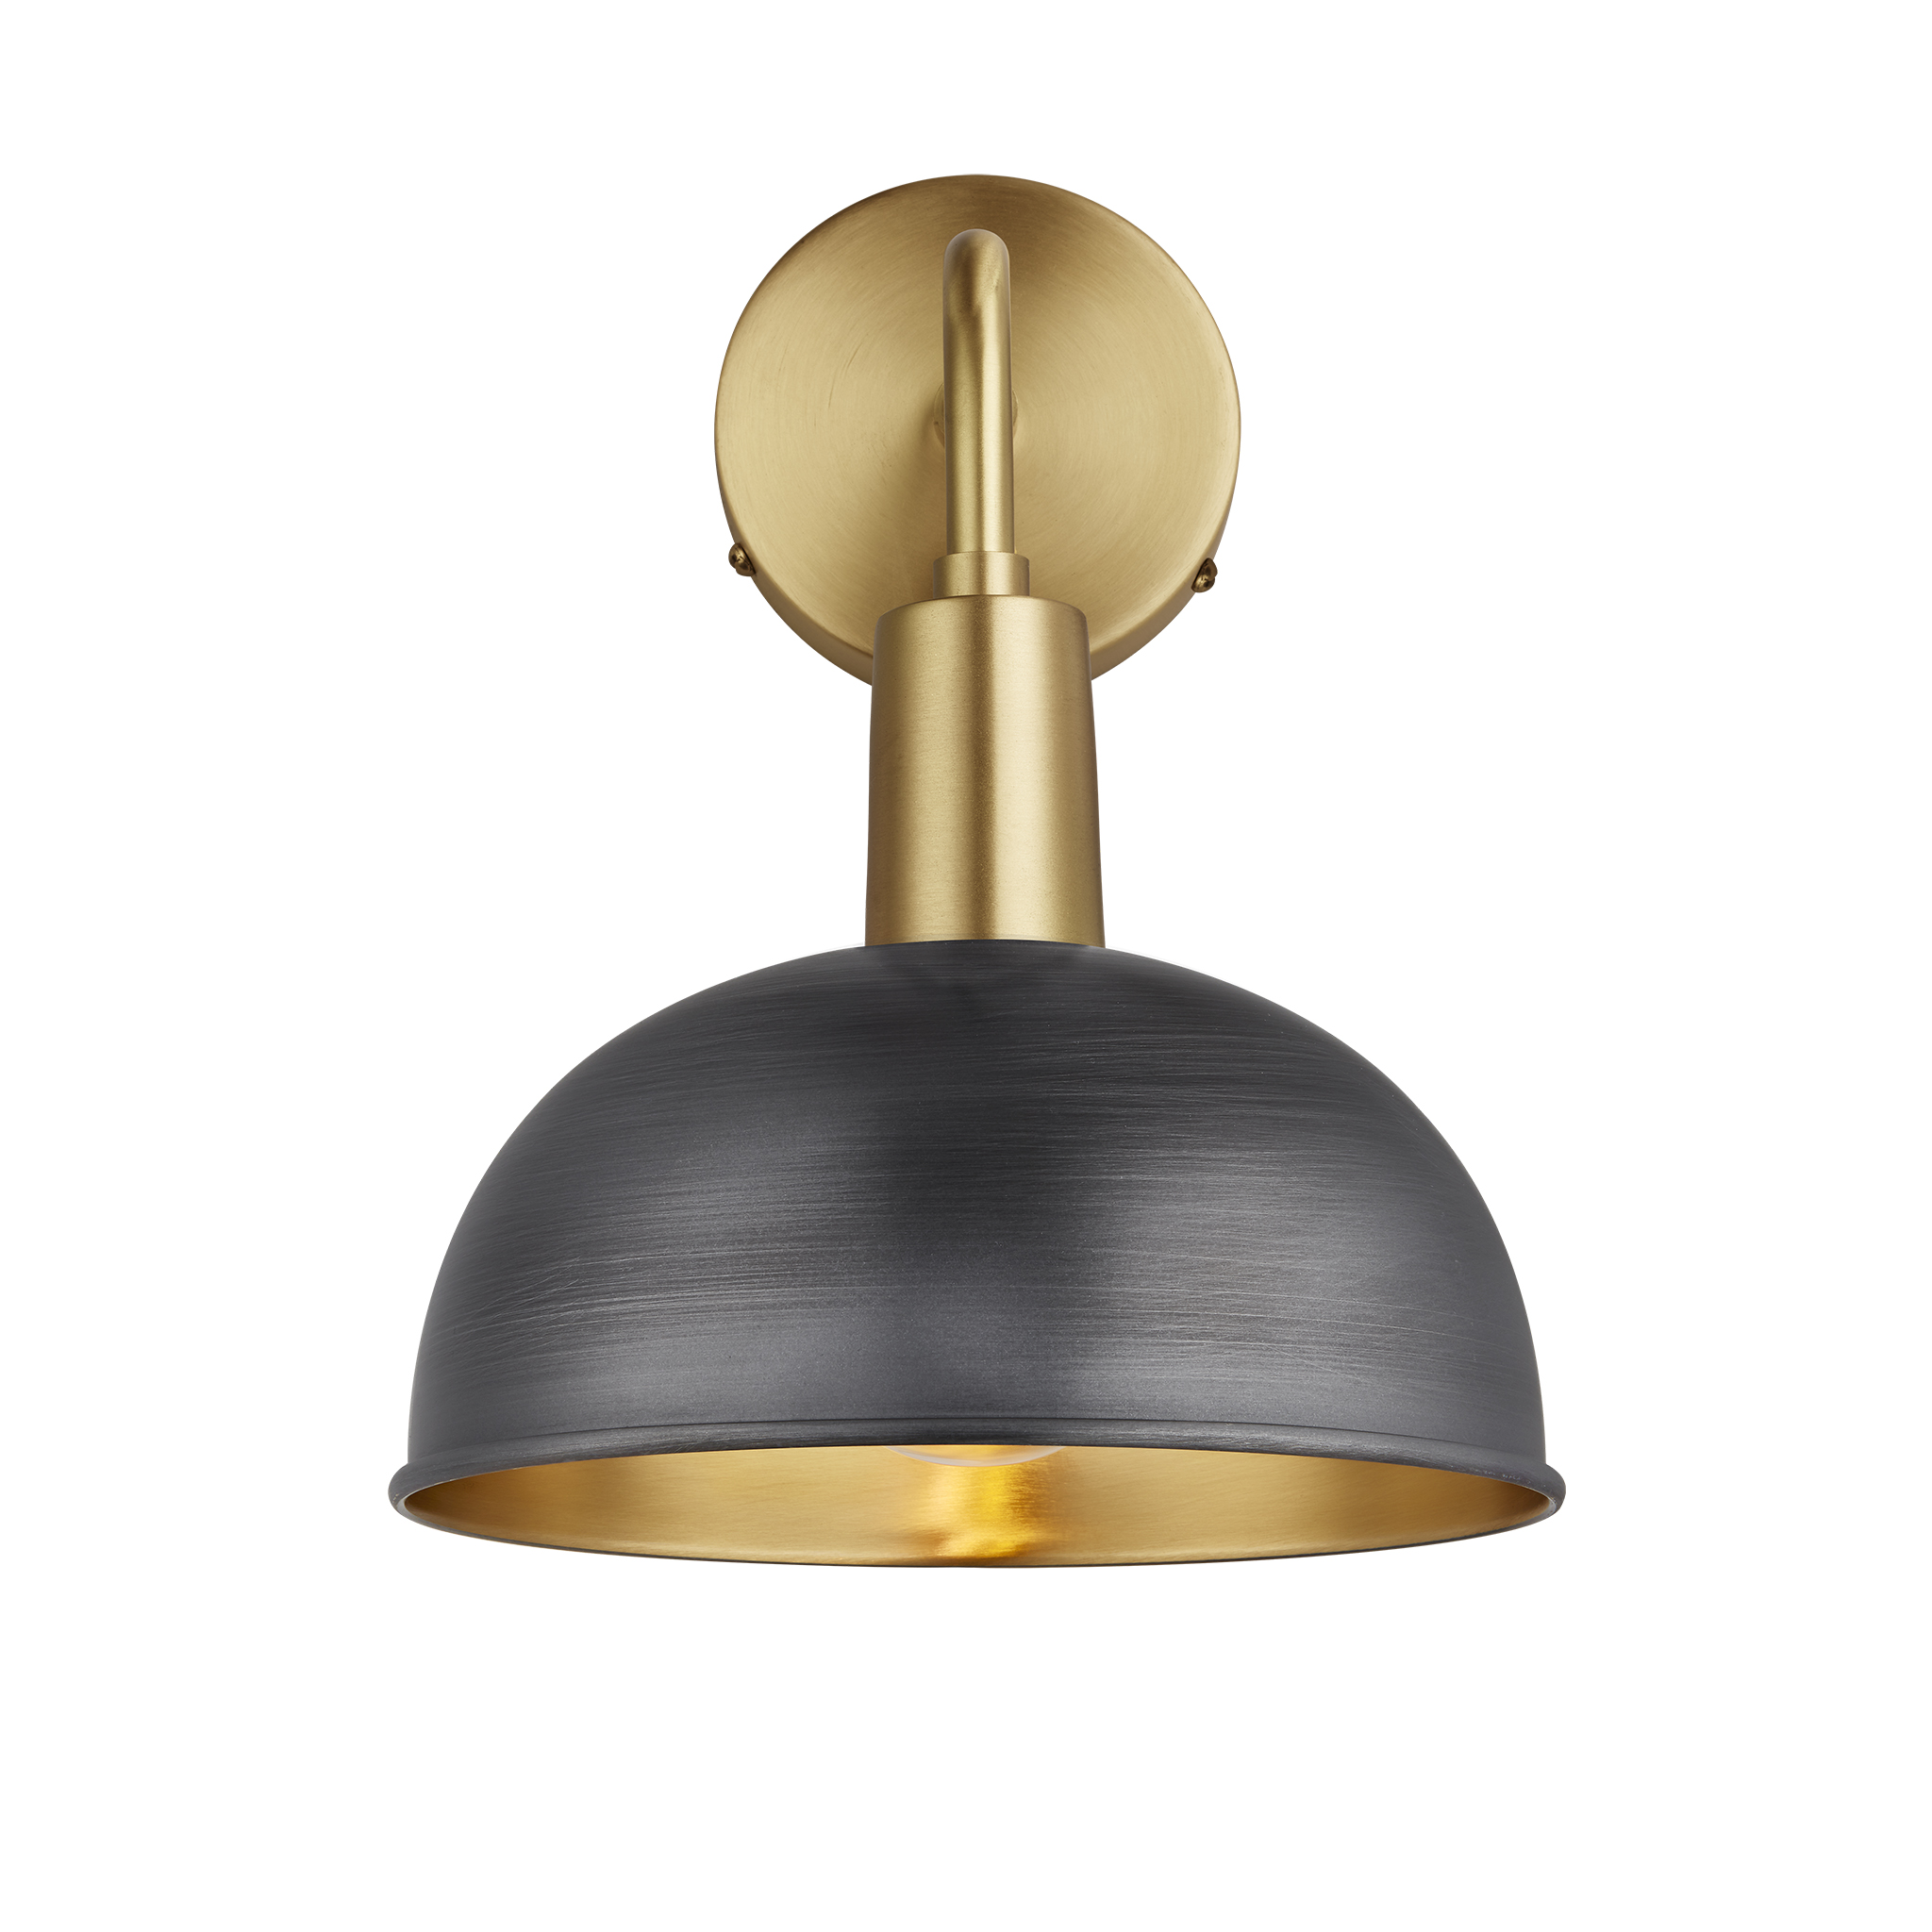 Sleek Dome Wall Light - 8 Inch - Pewter & Brass - Brass Holder